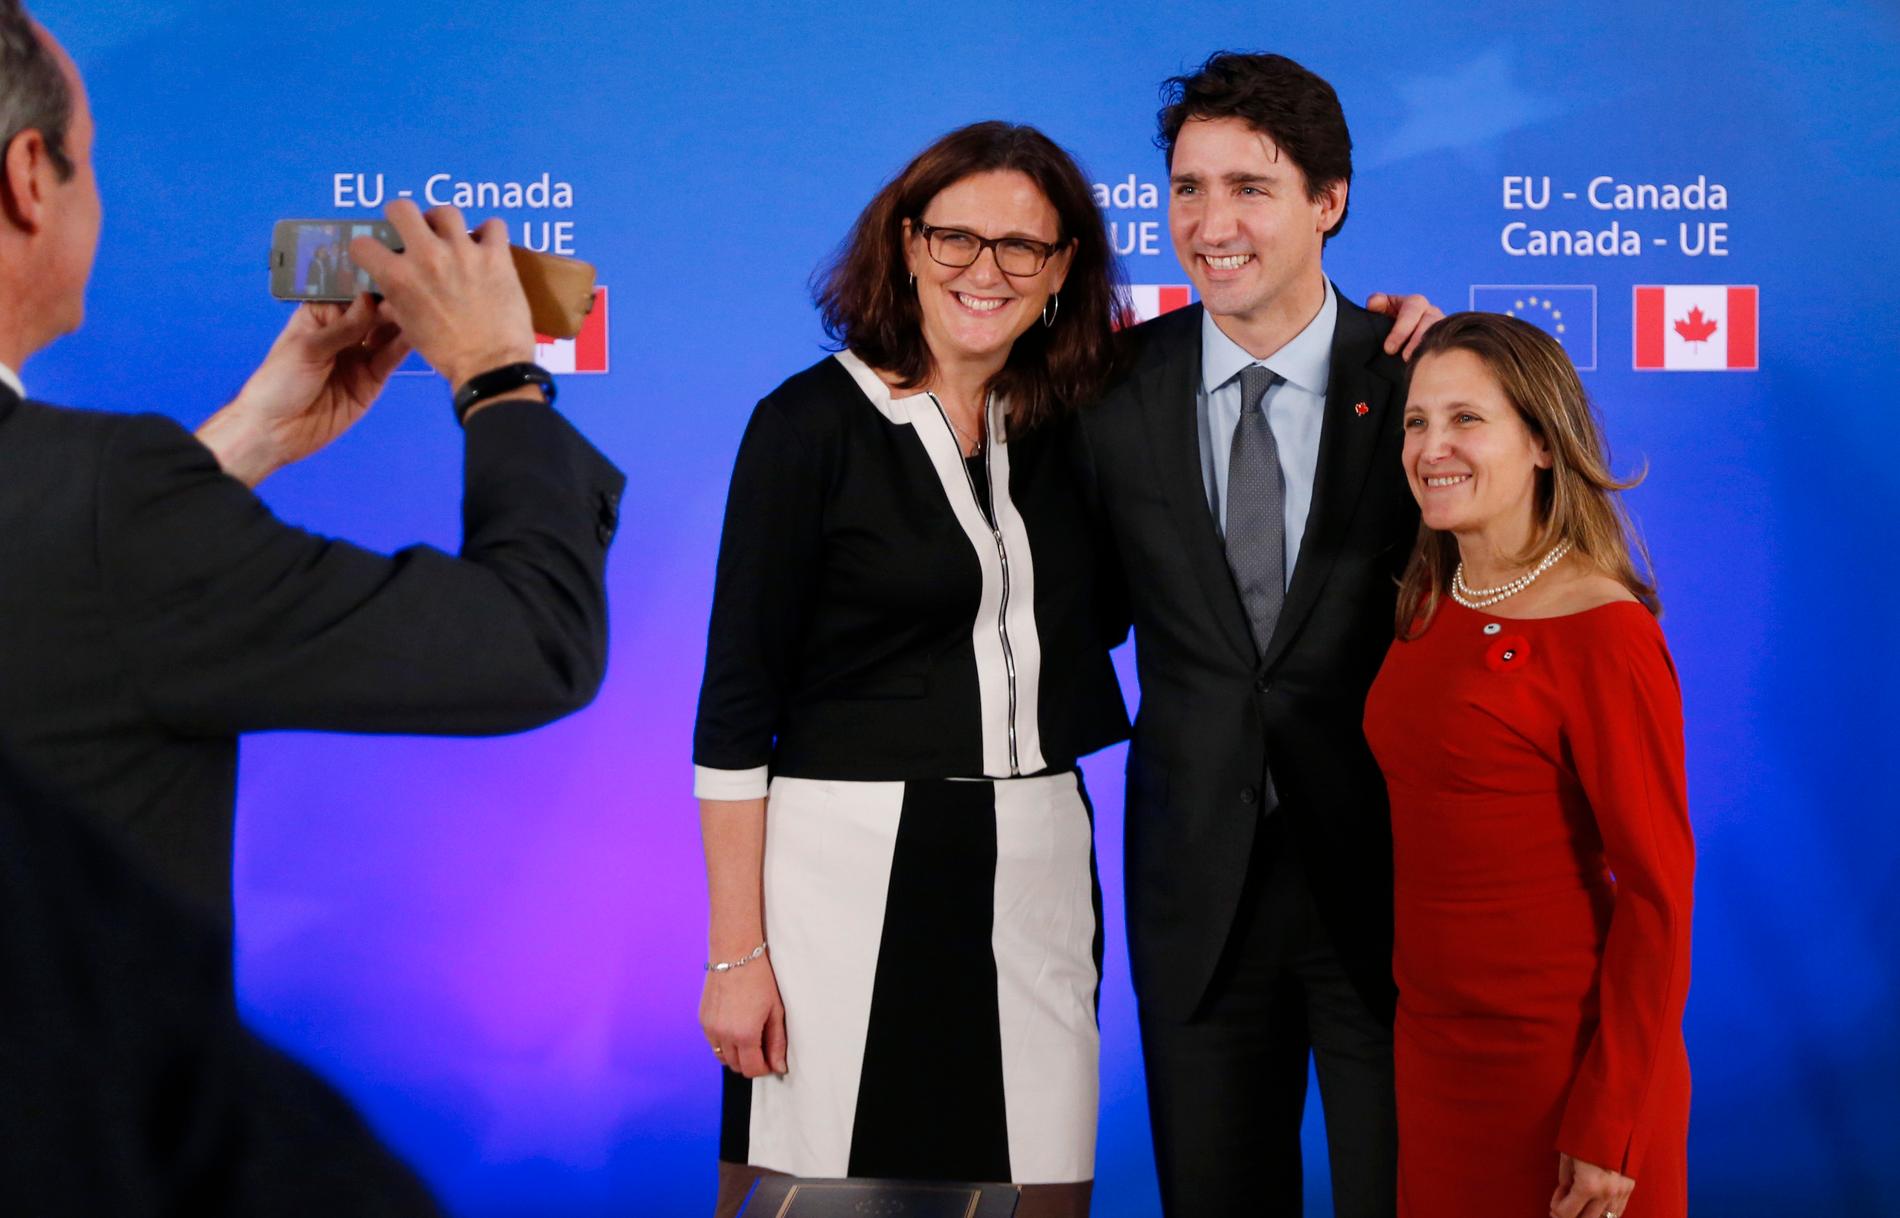 Handelsavtalet Ceta mellan EU och Kanada blev en stor framgång för Cecilia Malmström, här tillsammans med Kanadas premiärminister Justin Trudeau och dåvarande handelsministern Chrystia Freeland. Arkivbild.